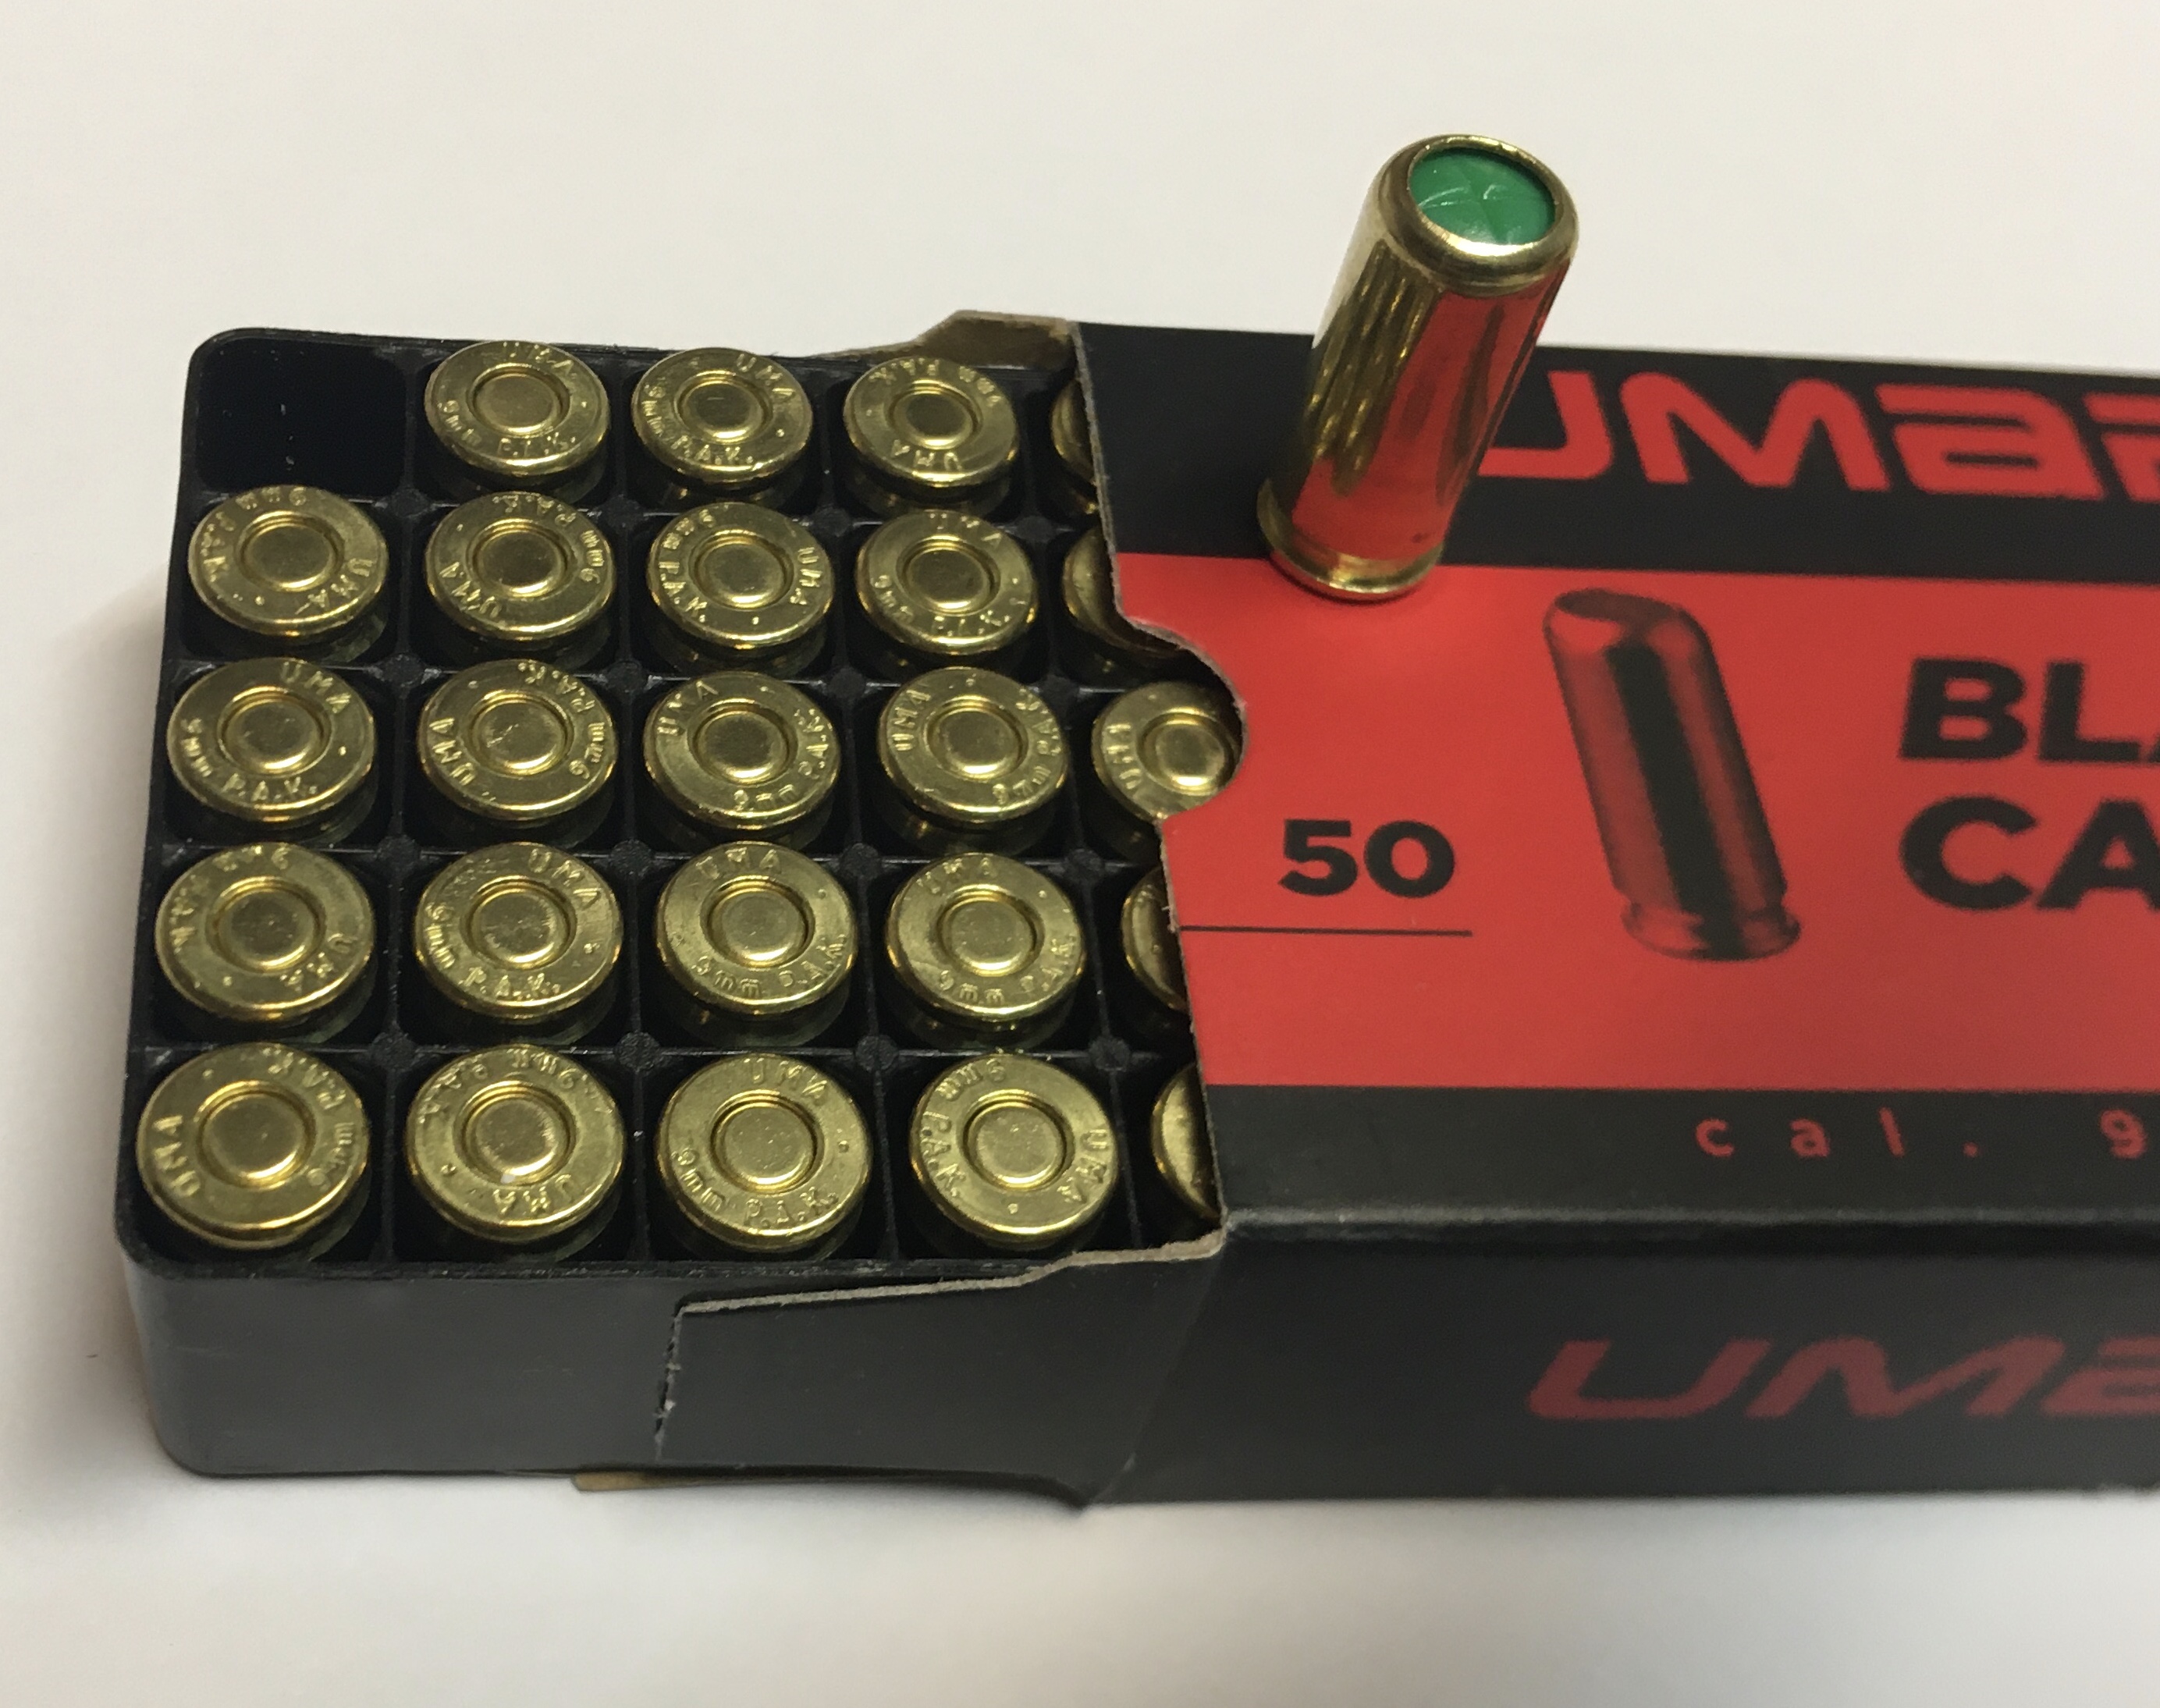  Faltschachtel mit 50 Schuss Platzpatronen im Kaliber 9mm P.A. für Schreckschusspistolen und Gaspistolen.